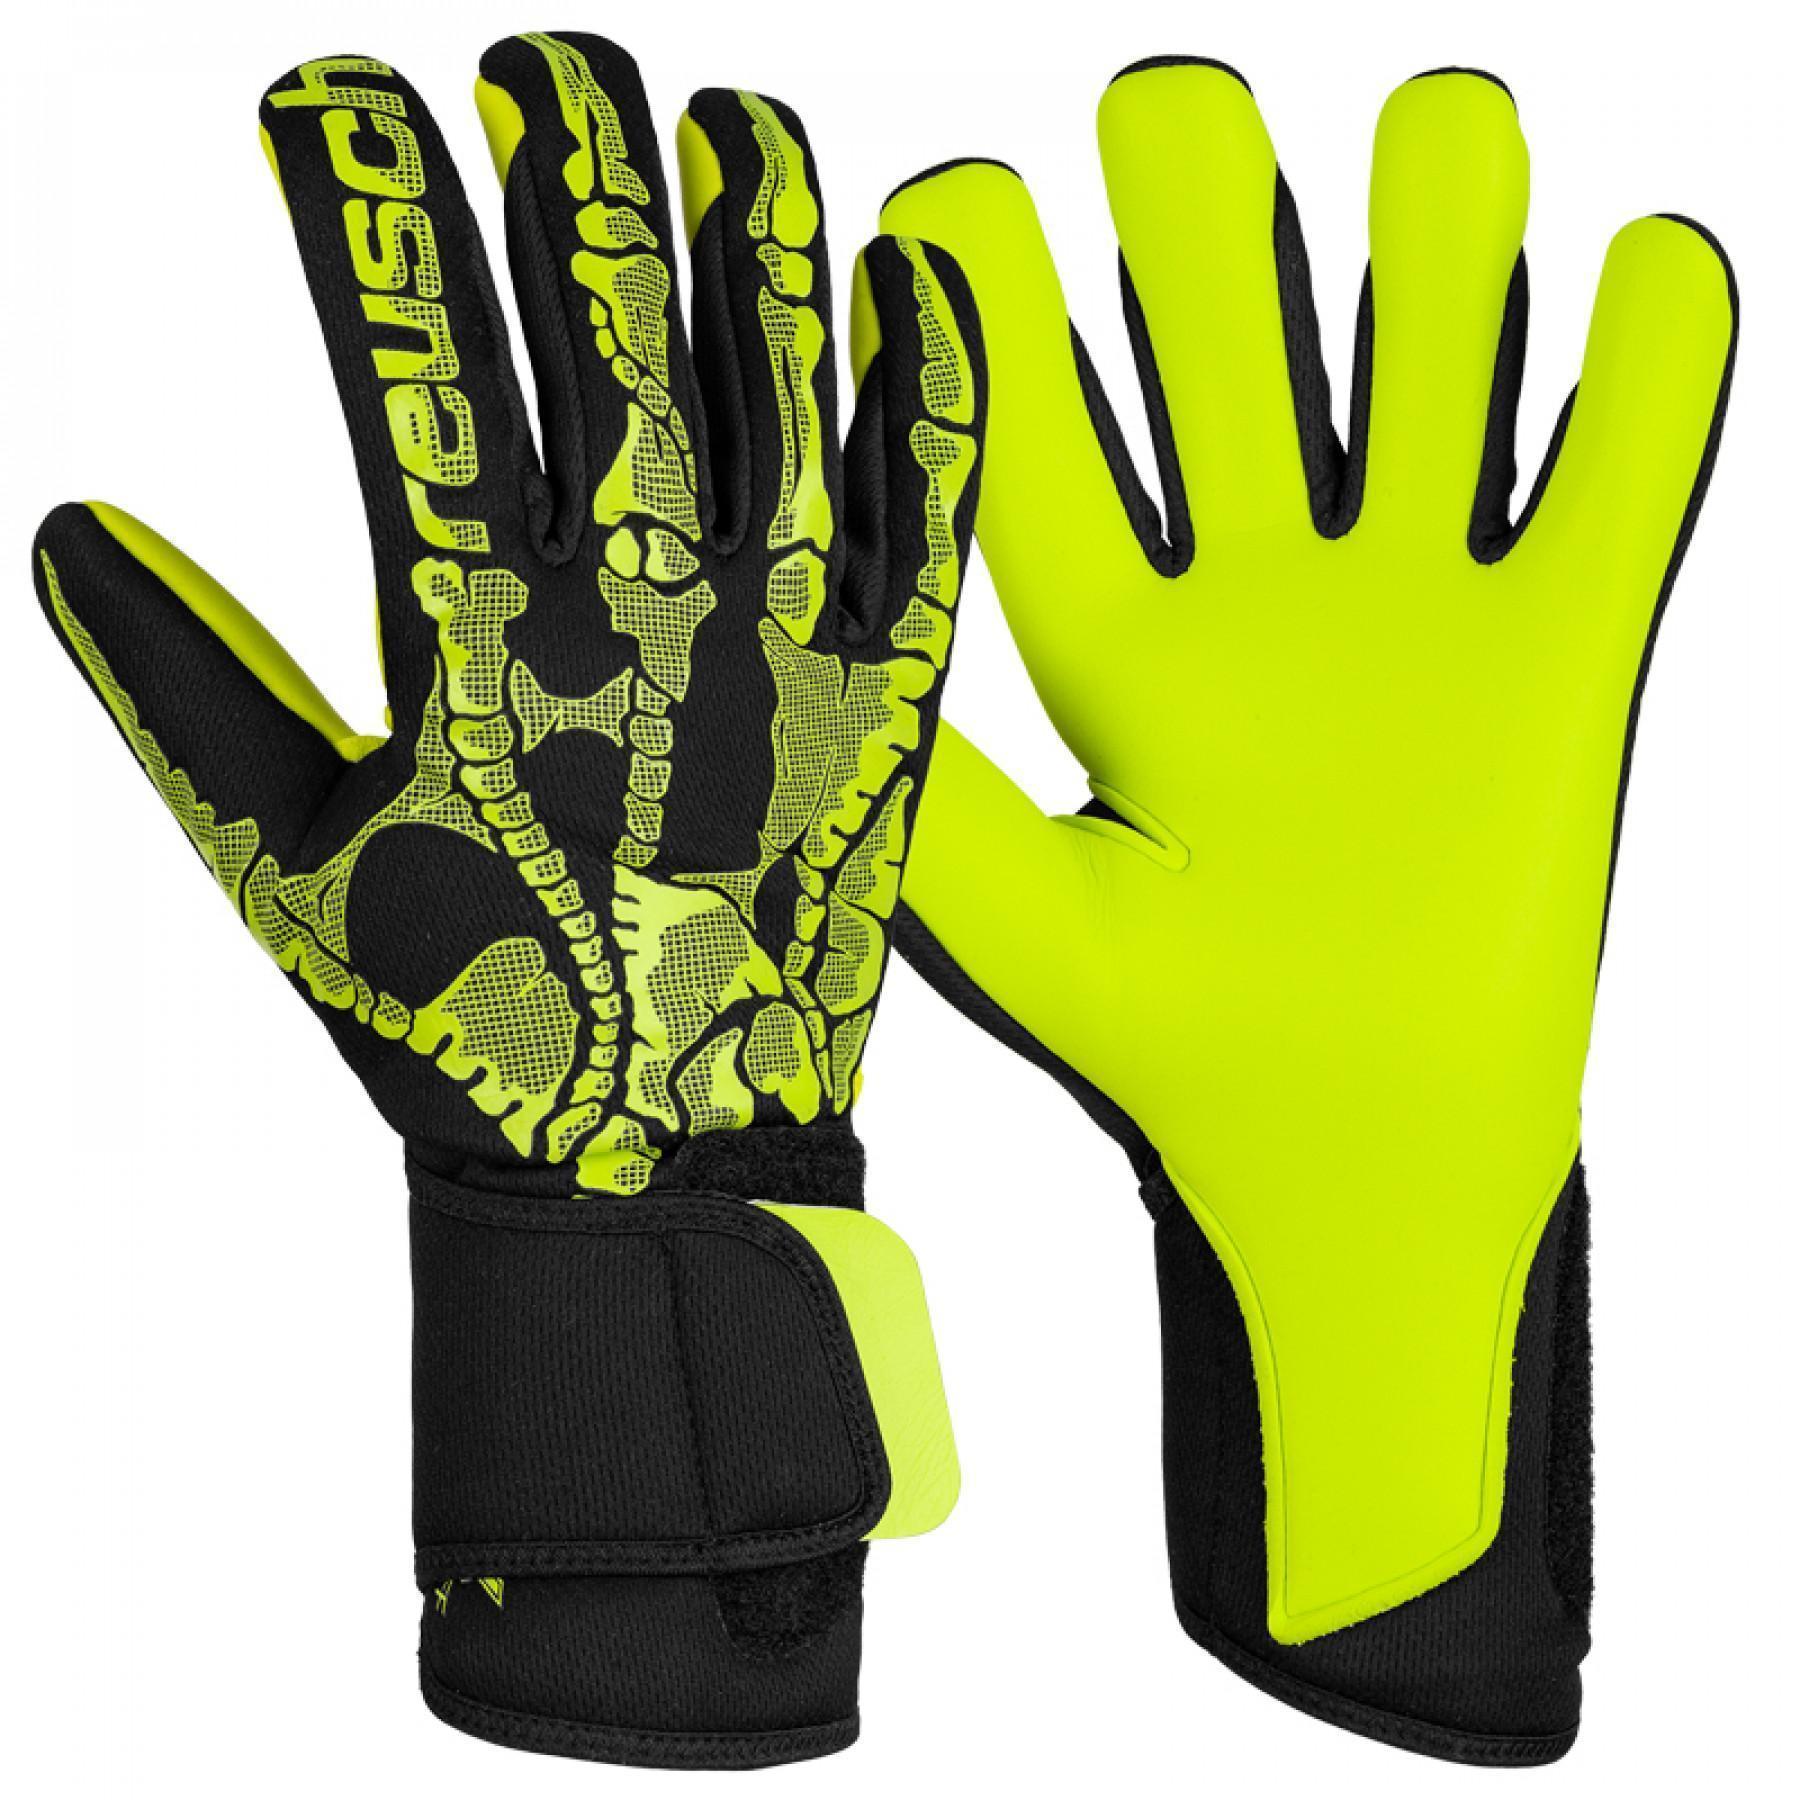 Goalkeeper gloves Reusch Pure Contact X-ray S1